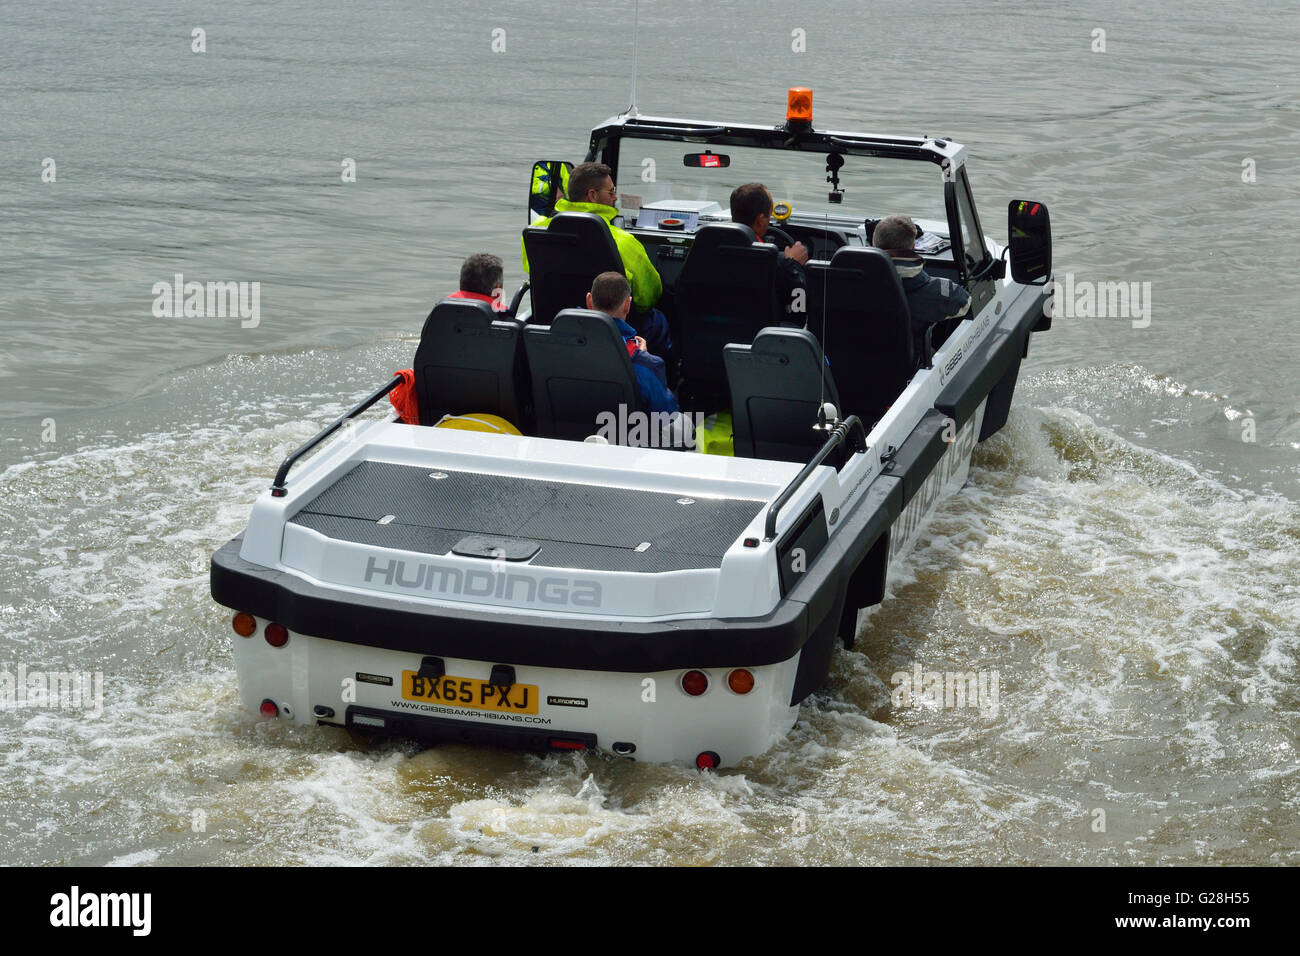 Les Amphibiens Gibbs amphibie véhicule utilitaire Hundinga en cours d'essais sur la Tamise à Londres Banque D'Images